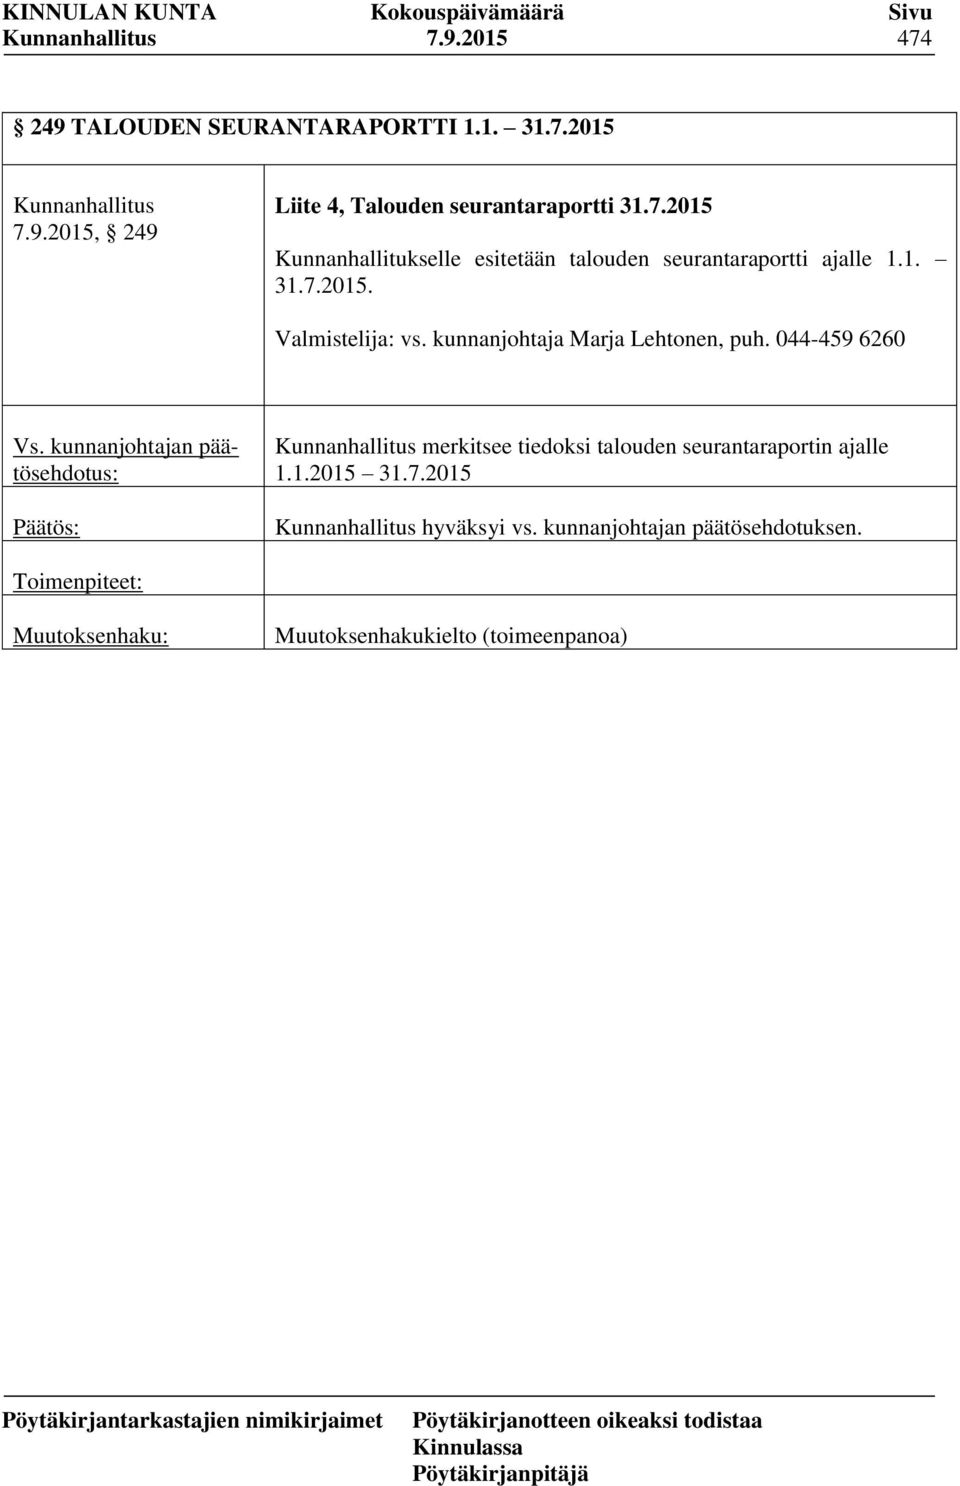 kunnanjohtaja Marja Lehtonen, puh. 044-459 6260 merkitsee tiedoksi talouden seurantaraportin ajalle 1.